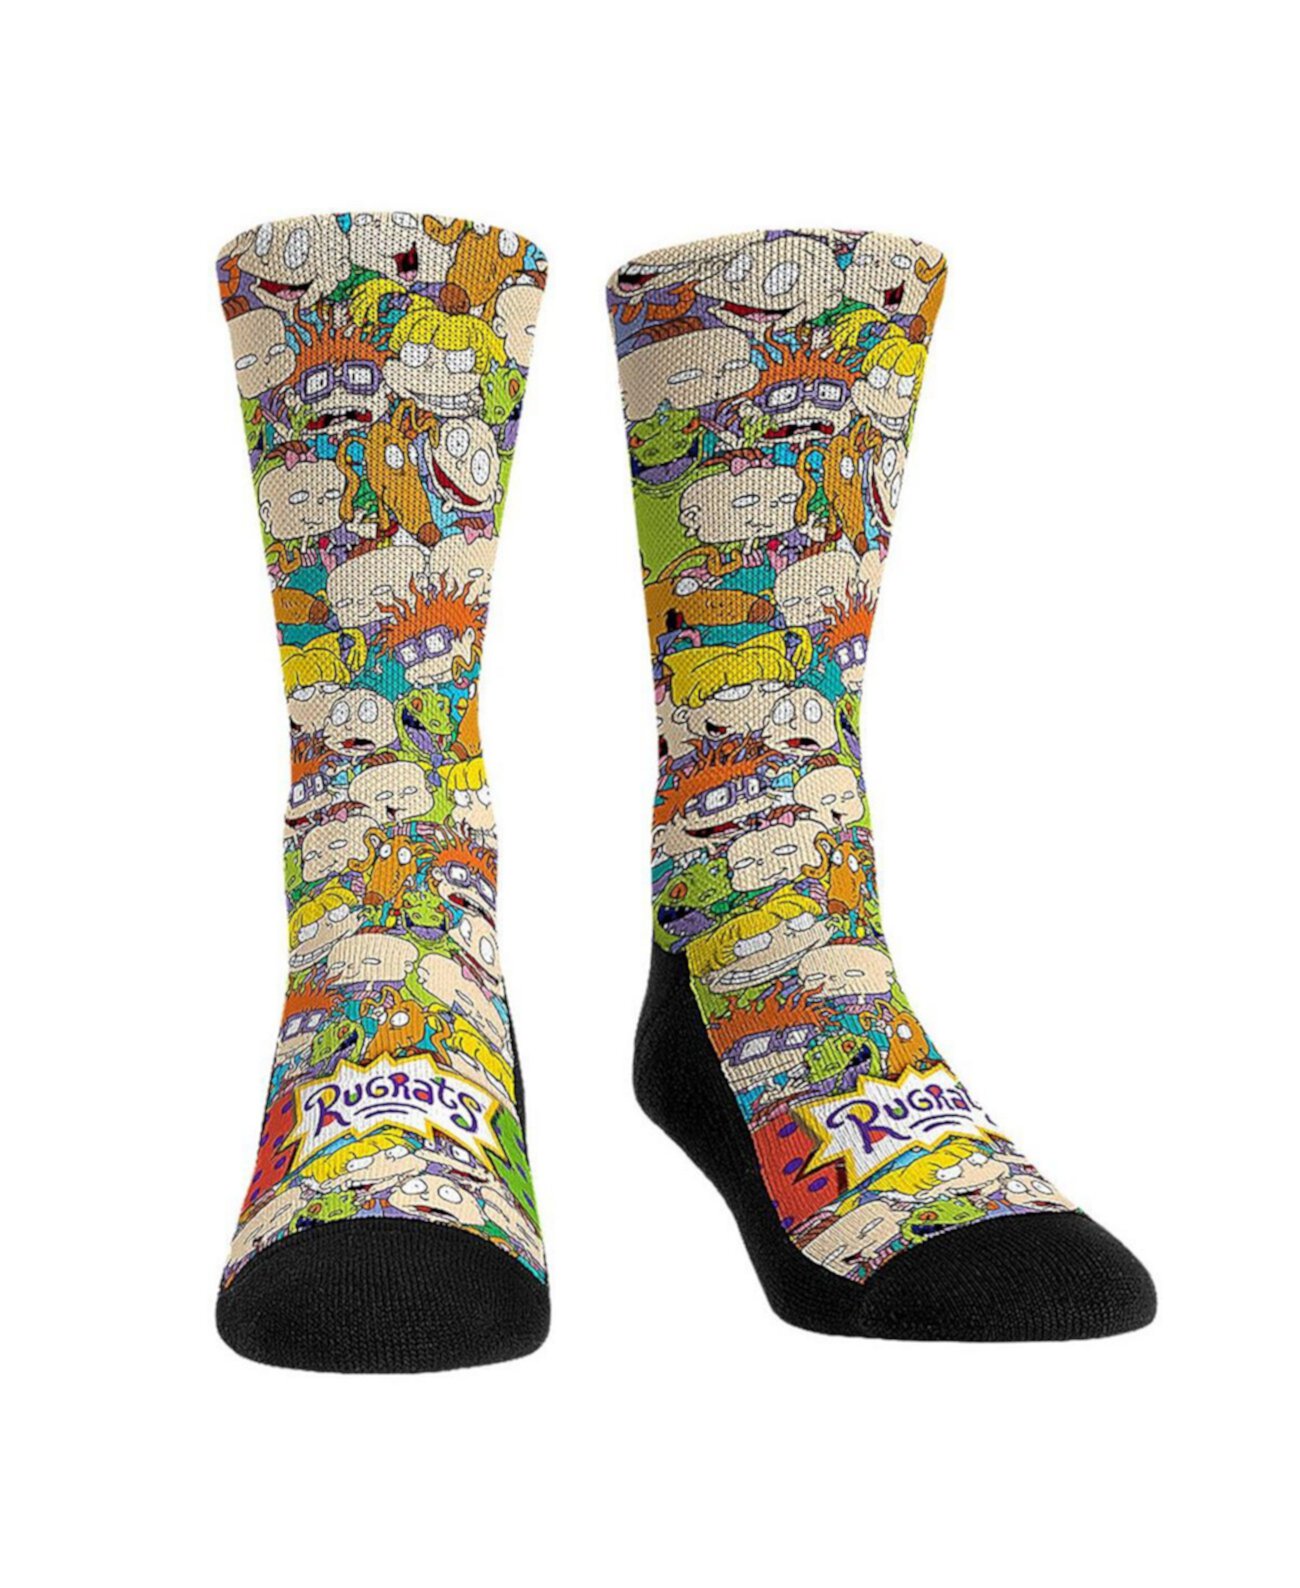 Мужские и женские носки Rugrats Stacked Персонажи Crew Socks Rock 'Em